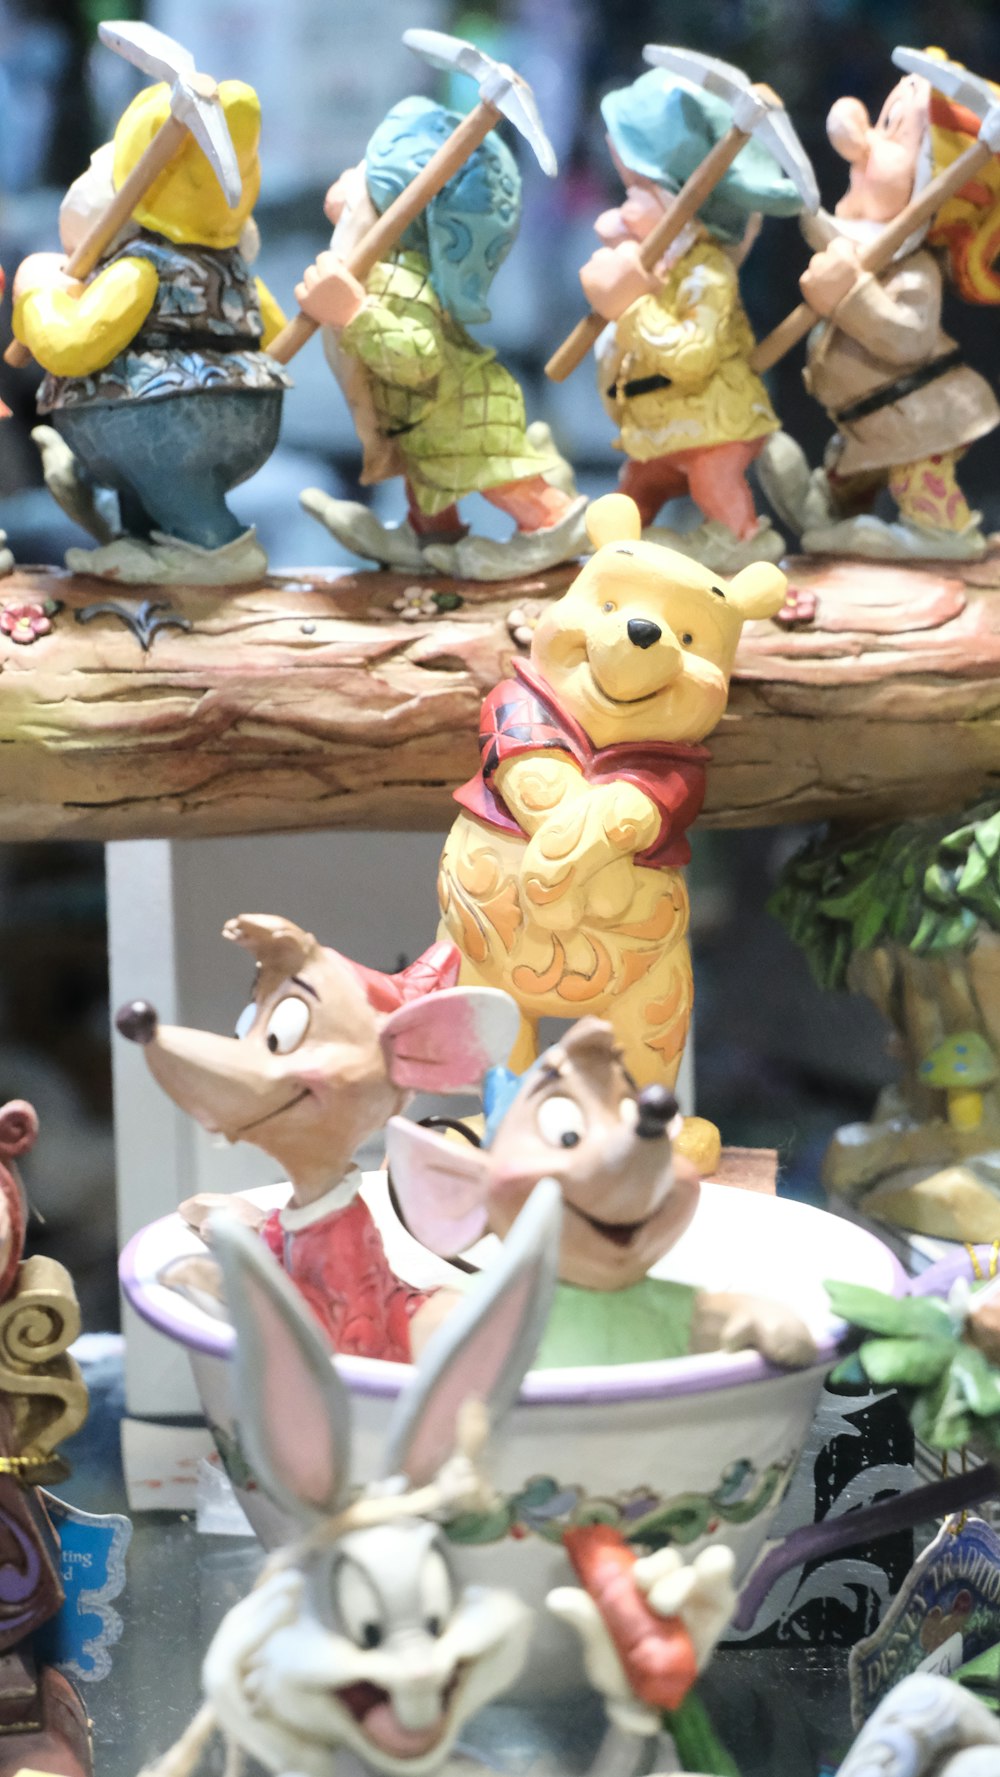 Un grupo de figuritas de Winnie the Pooh